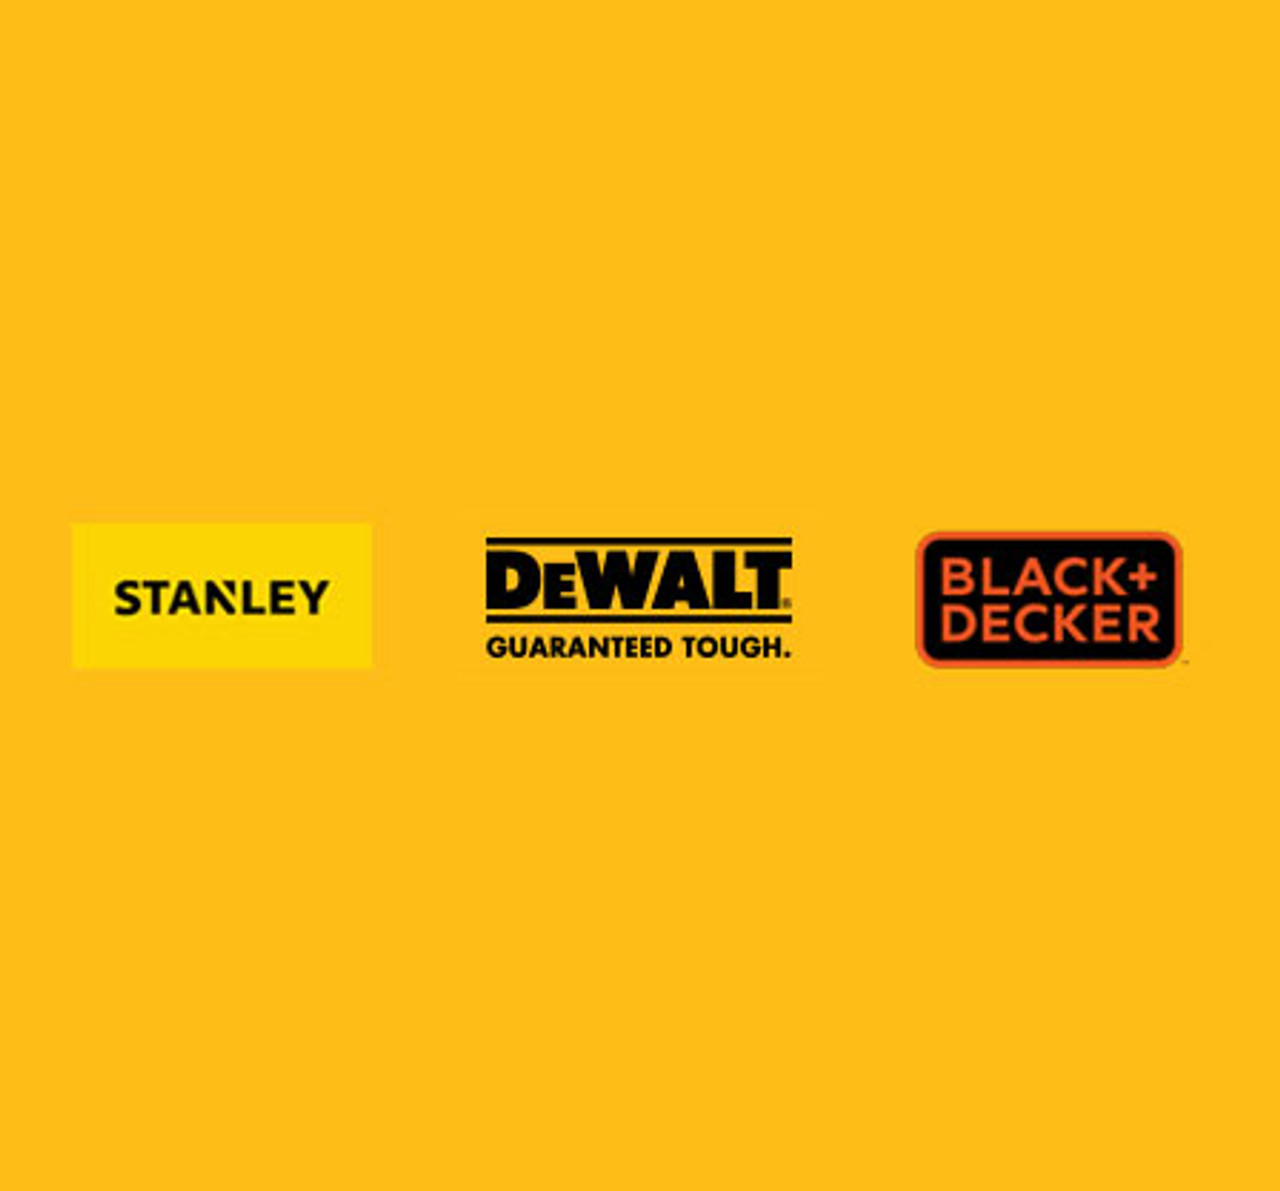 Dewalt Stanley Black & Decker Logos